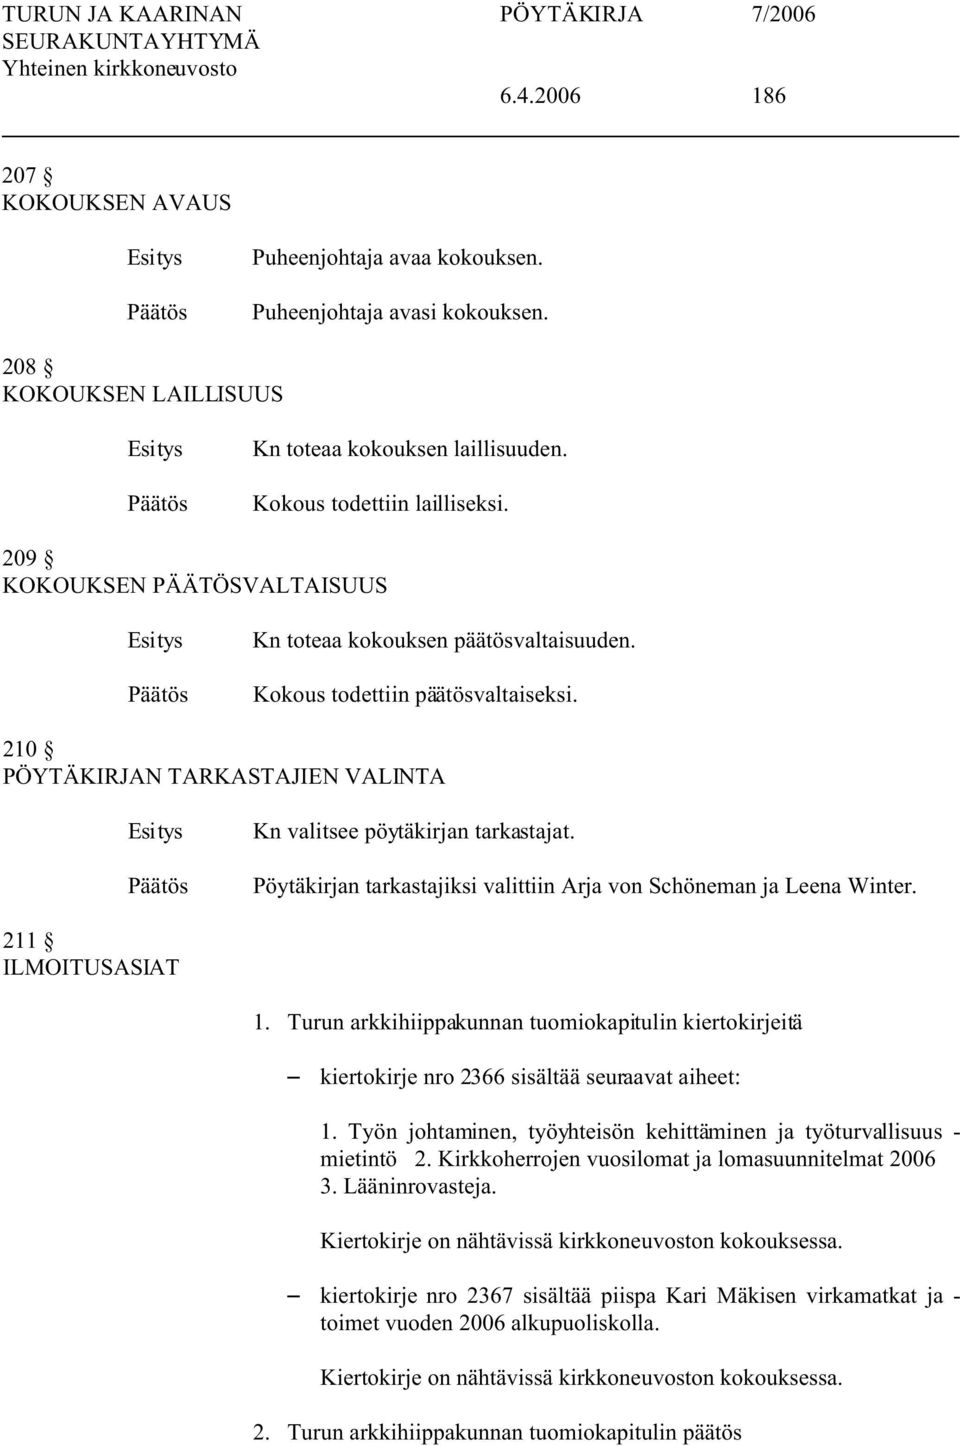 Pöytäkirjan tarkastajiksi valittiin Arja von Schöneman ja Leena Winter. 211 ILMOITUSASIAT 1. Turun arkkihiippakunnan tuomiokapitulin kiertokirjeitä S kiertokirje nro 2366 sisältää seuraavat aiheet: 1.